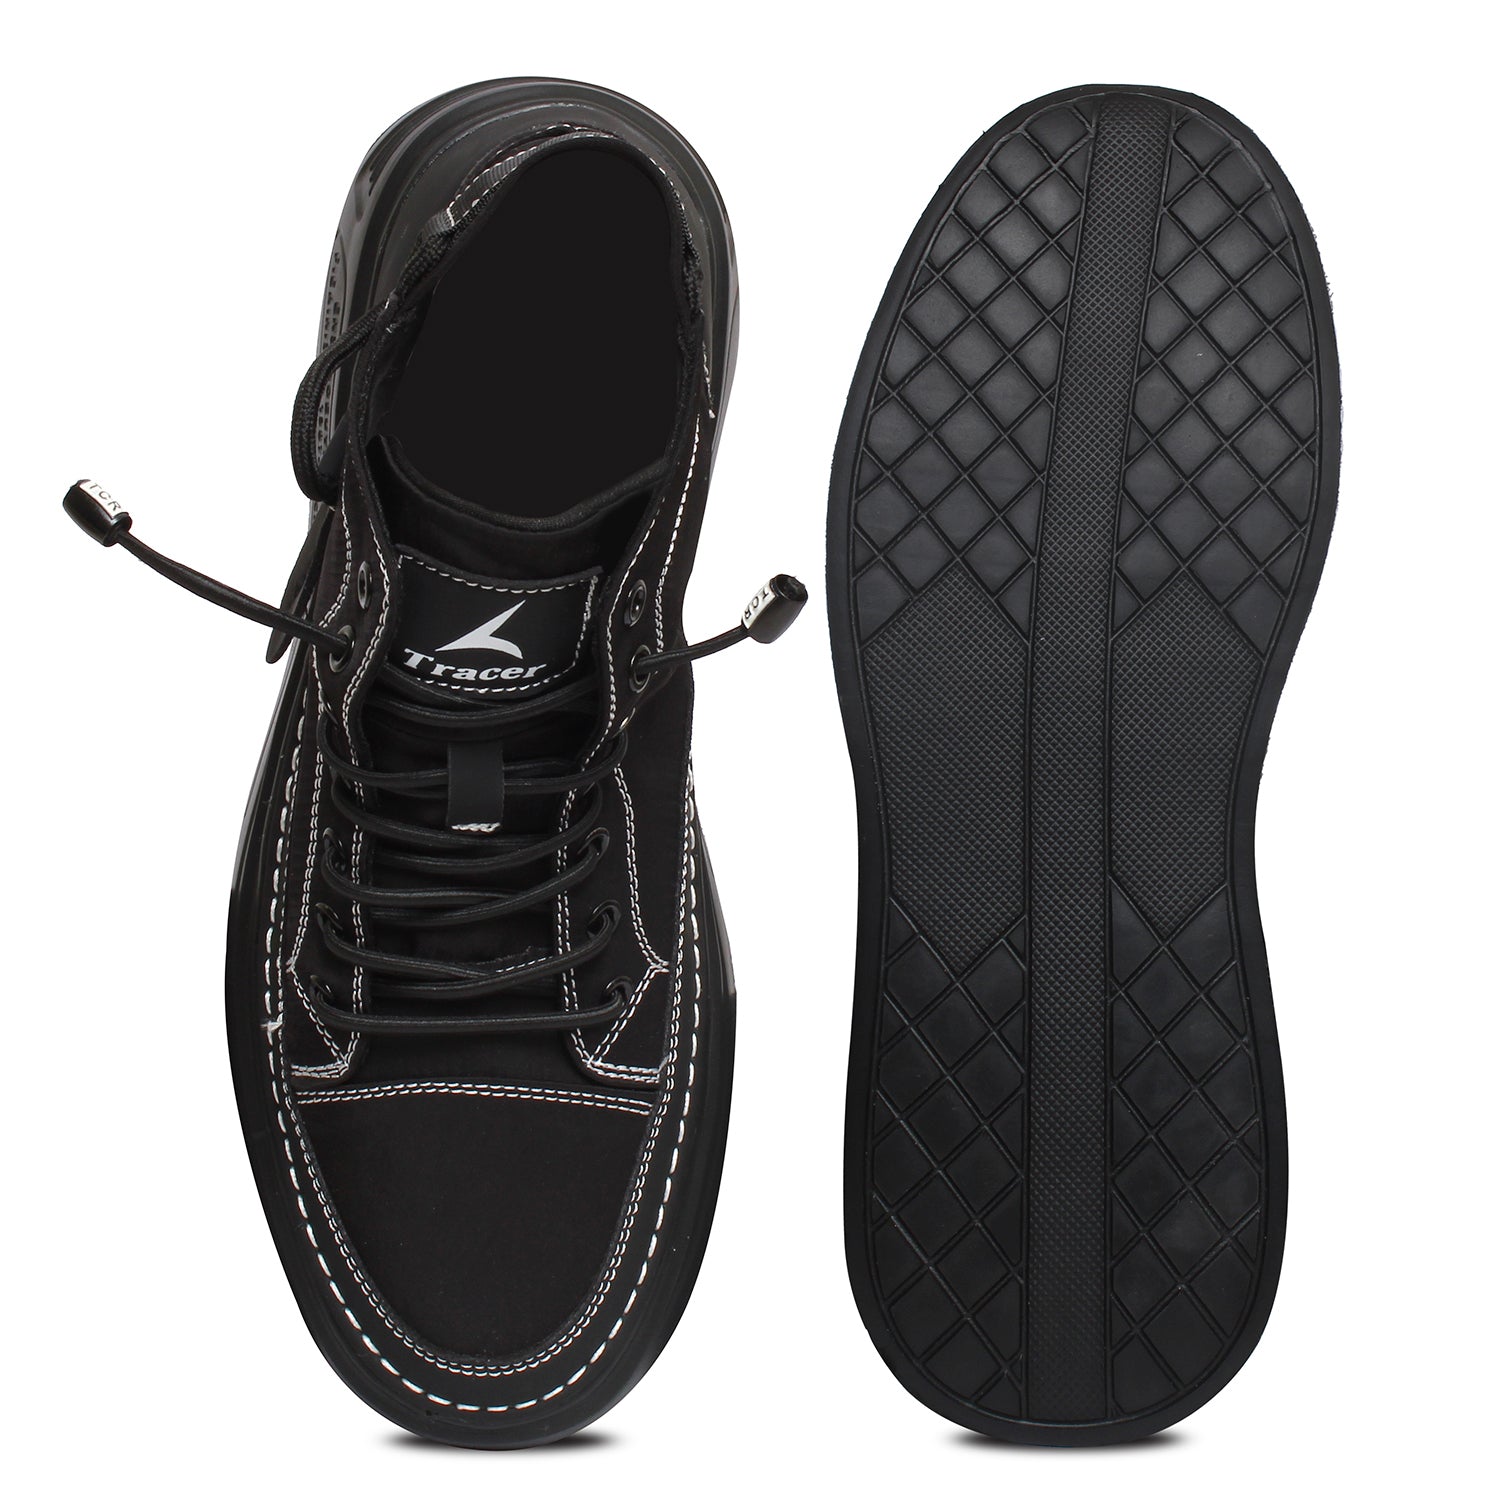 Tracer Sledge 2811 Sneaker for Men's Black